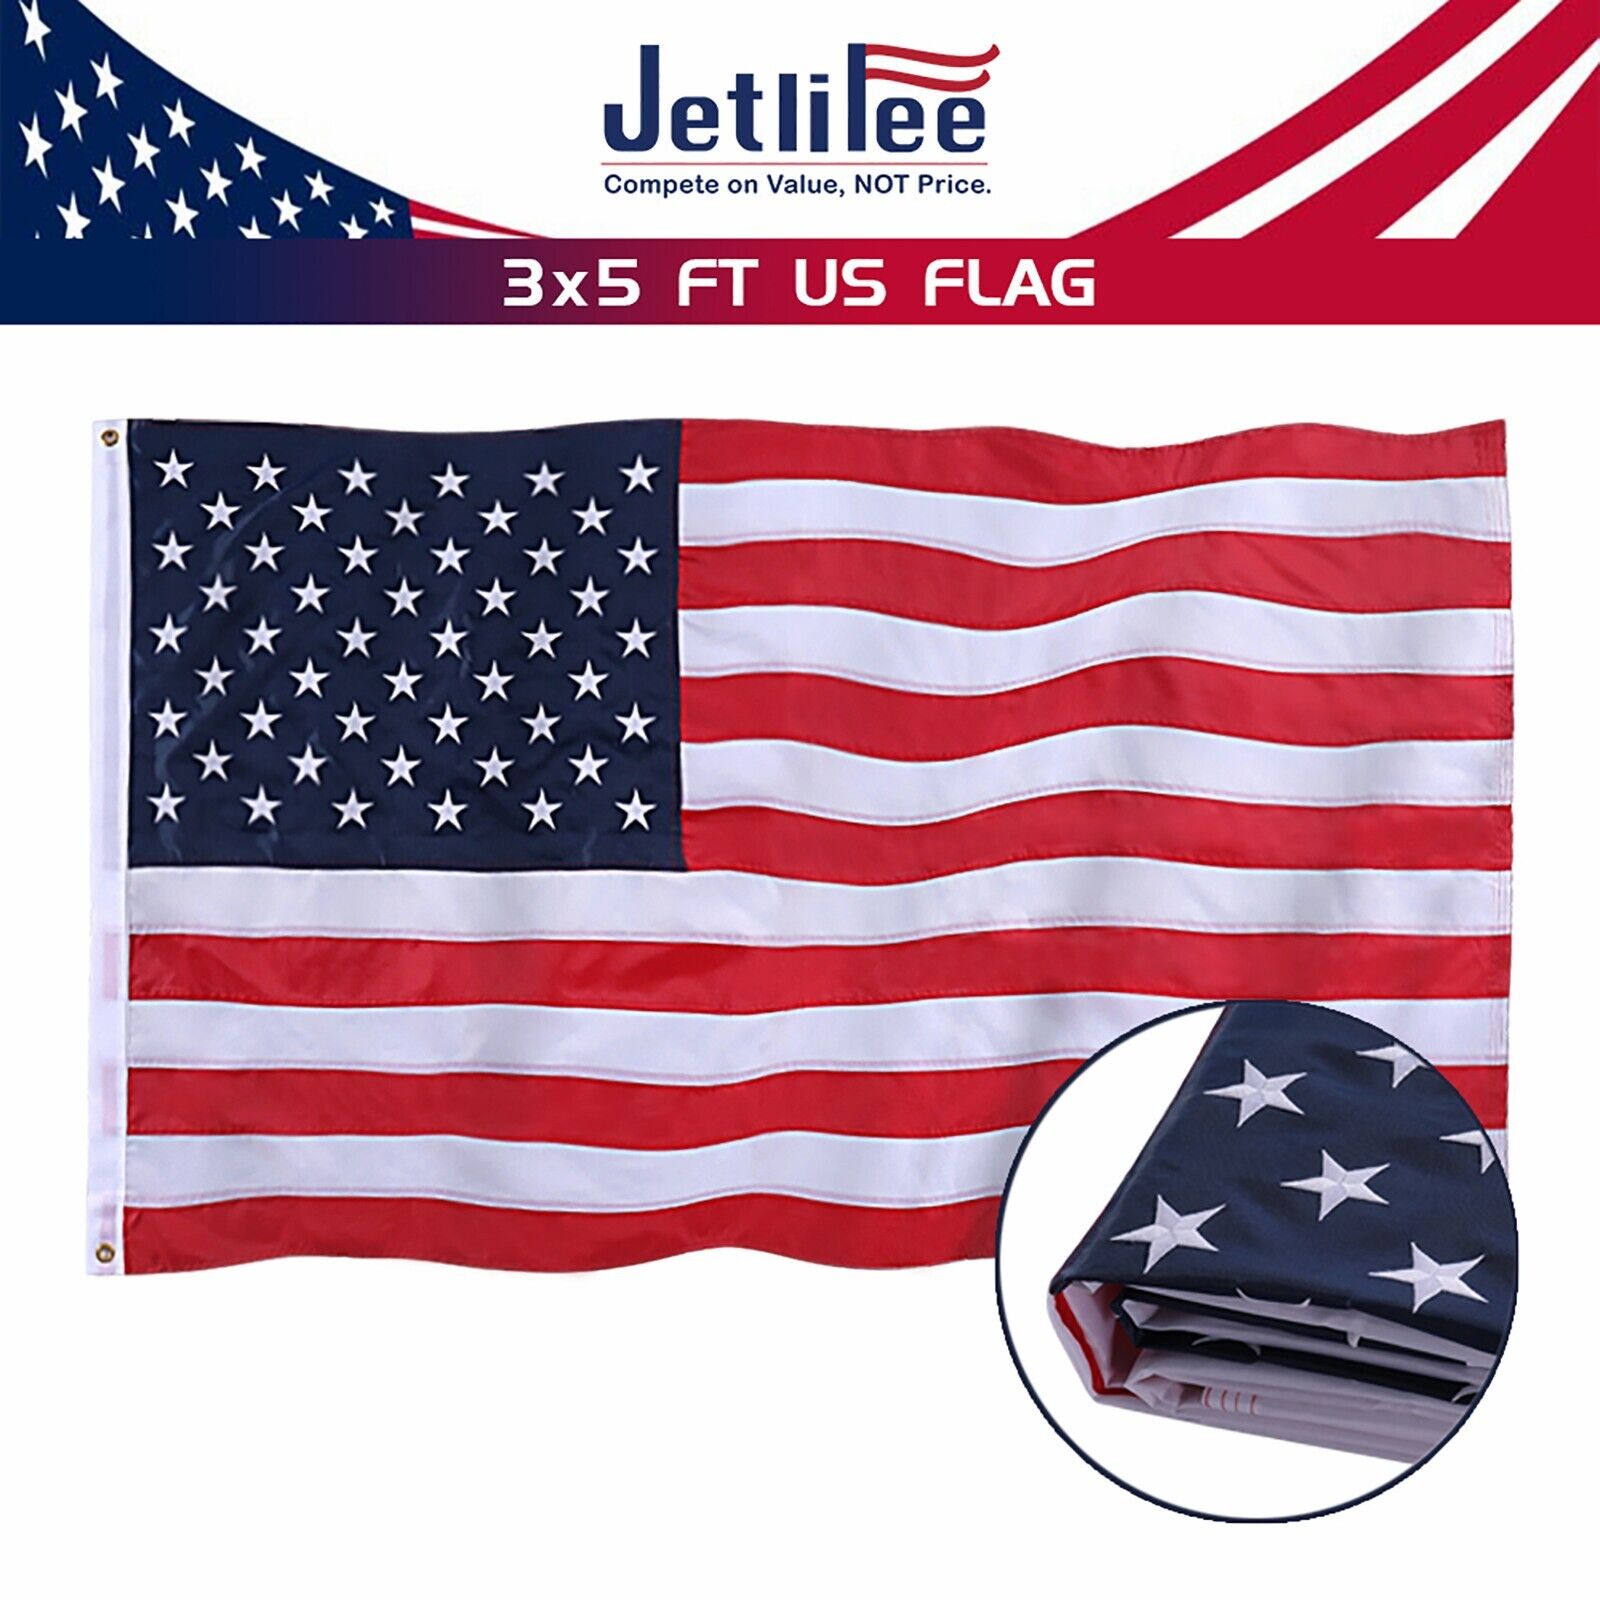 Jetlifee American Flag 3x5 ft US Flag UV Protected Embroidered Stars Sewn Stripe